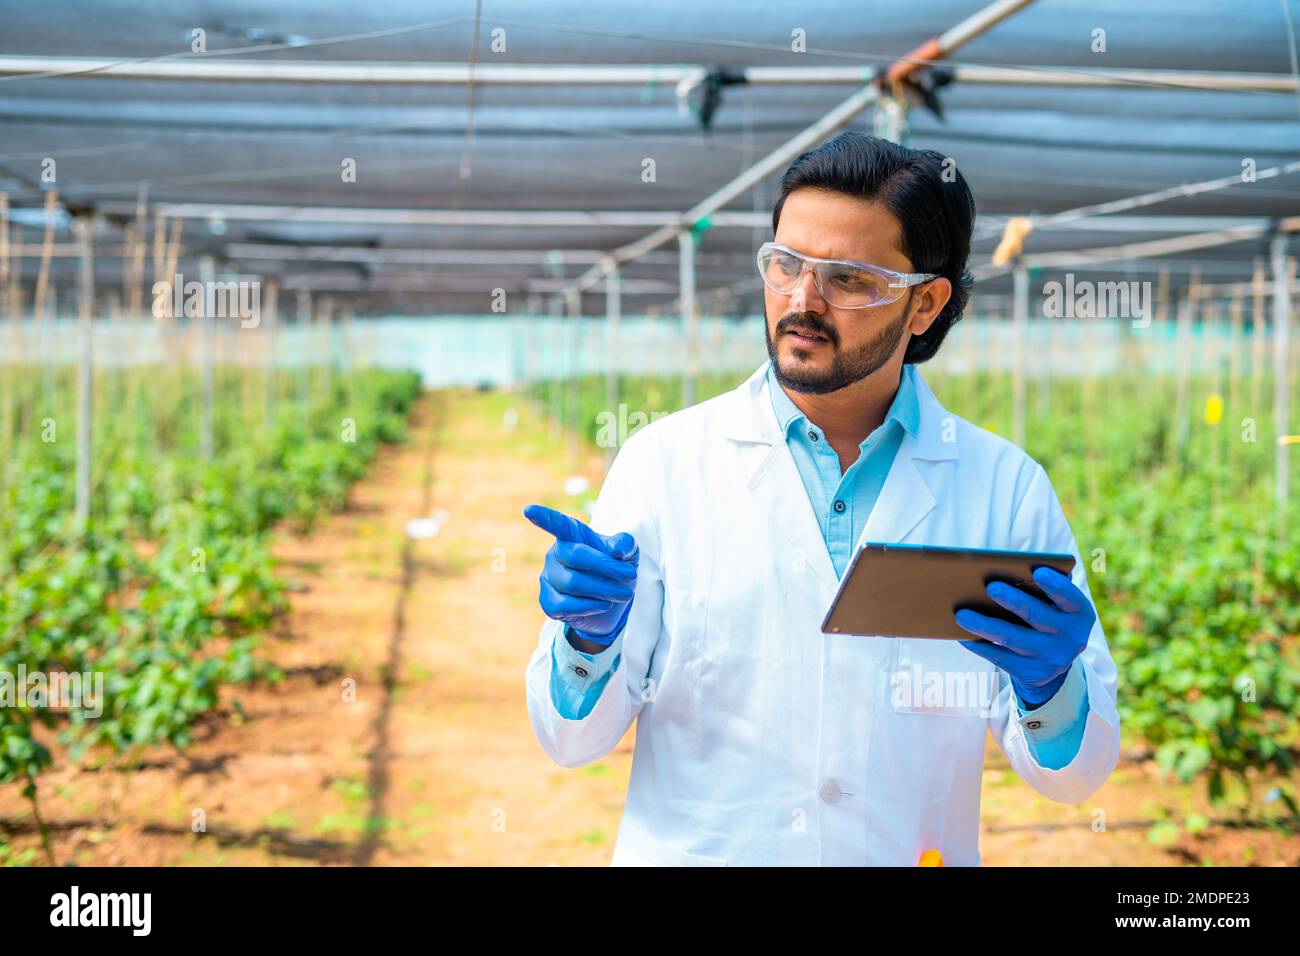 Agrarwissenschaftler am Greenhouse mit Digital Tab, indem er sich mit Schutzbrille und Handschuhen umsieht - Konzept der Biotechnologie, Datenanalyse und Stockfoto